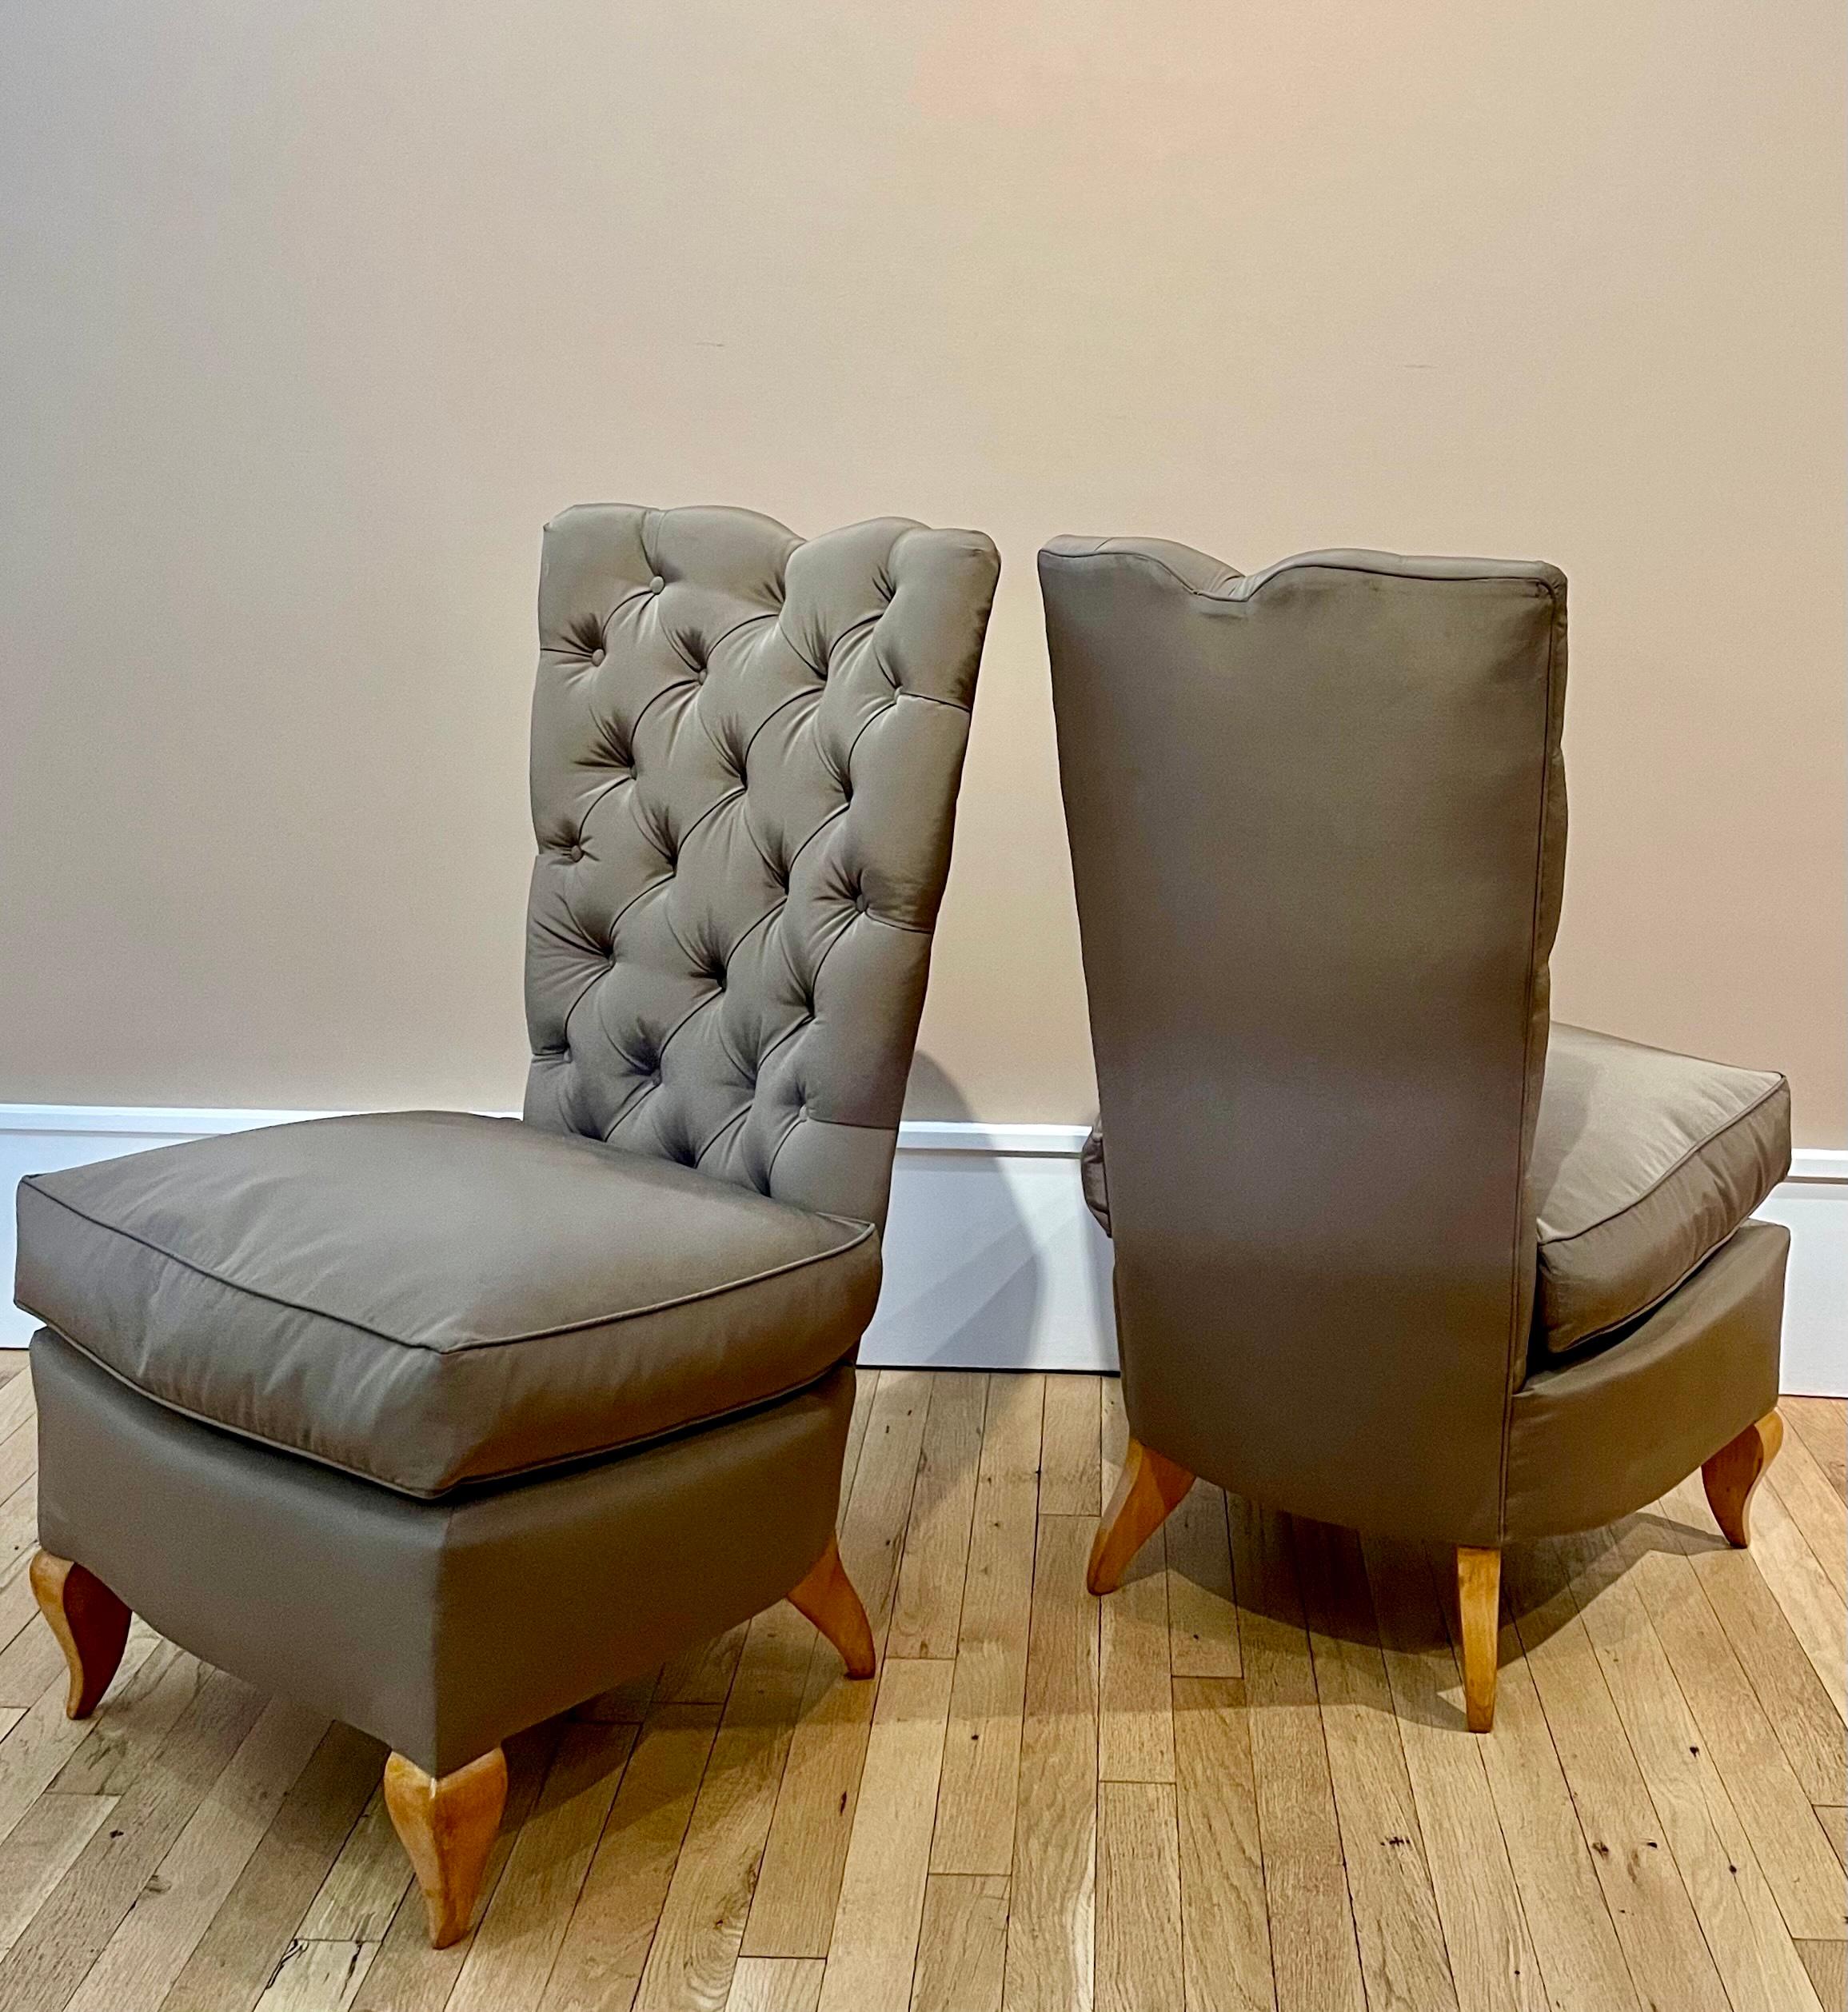 Ces chaises terrestres semblent être en apesanteur. Telle est l'illusion que le designer René Prou a pu créer dans le Paris des années 30 avec l'aide d'un tapissier très compétent. Avant de se mettre à son compte en 1920, Prou avait travaillé pour